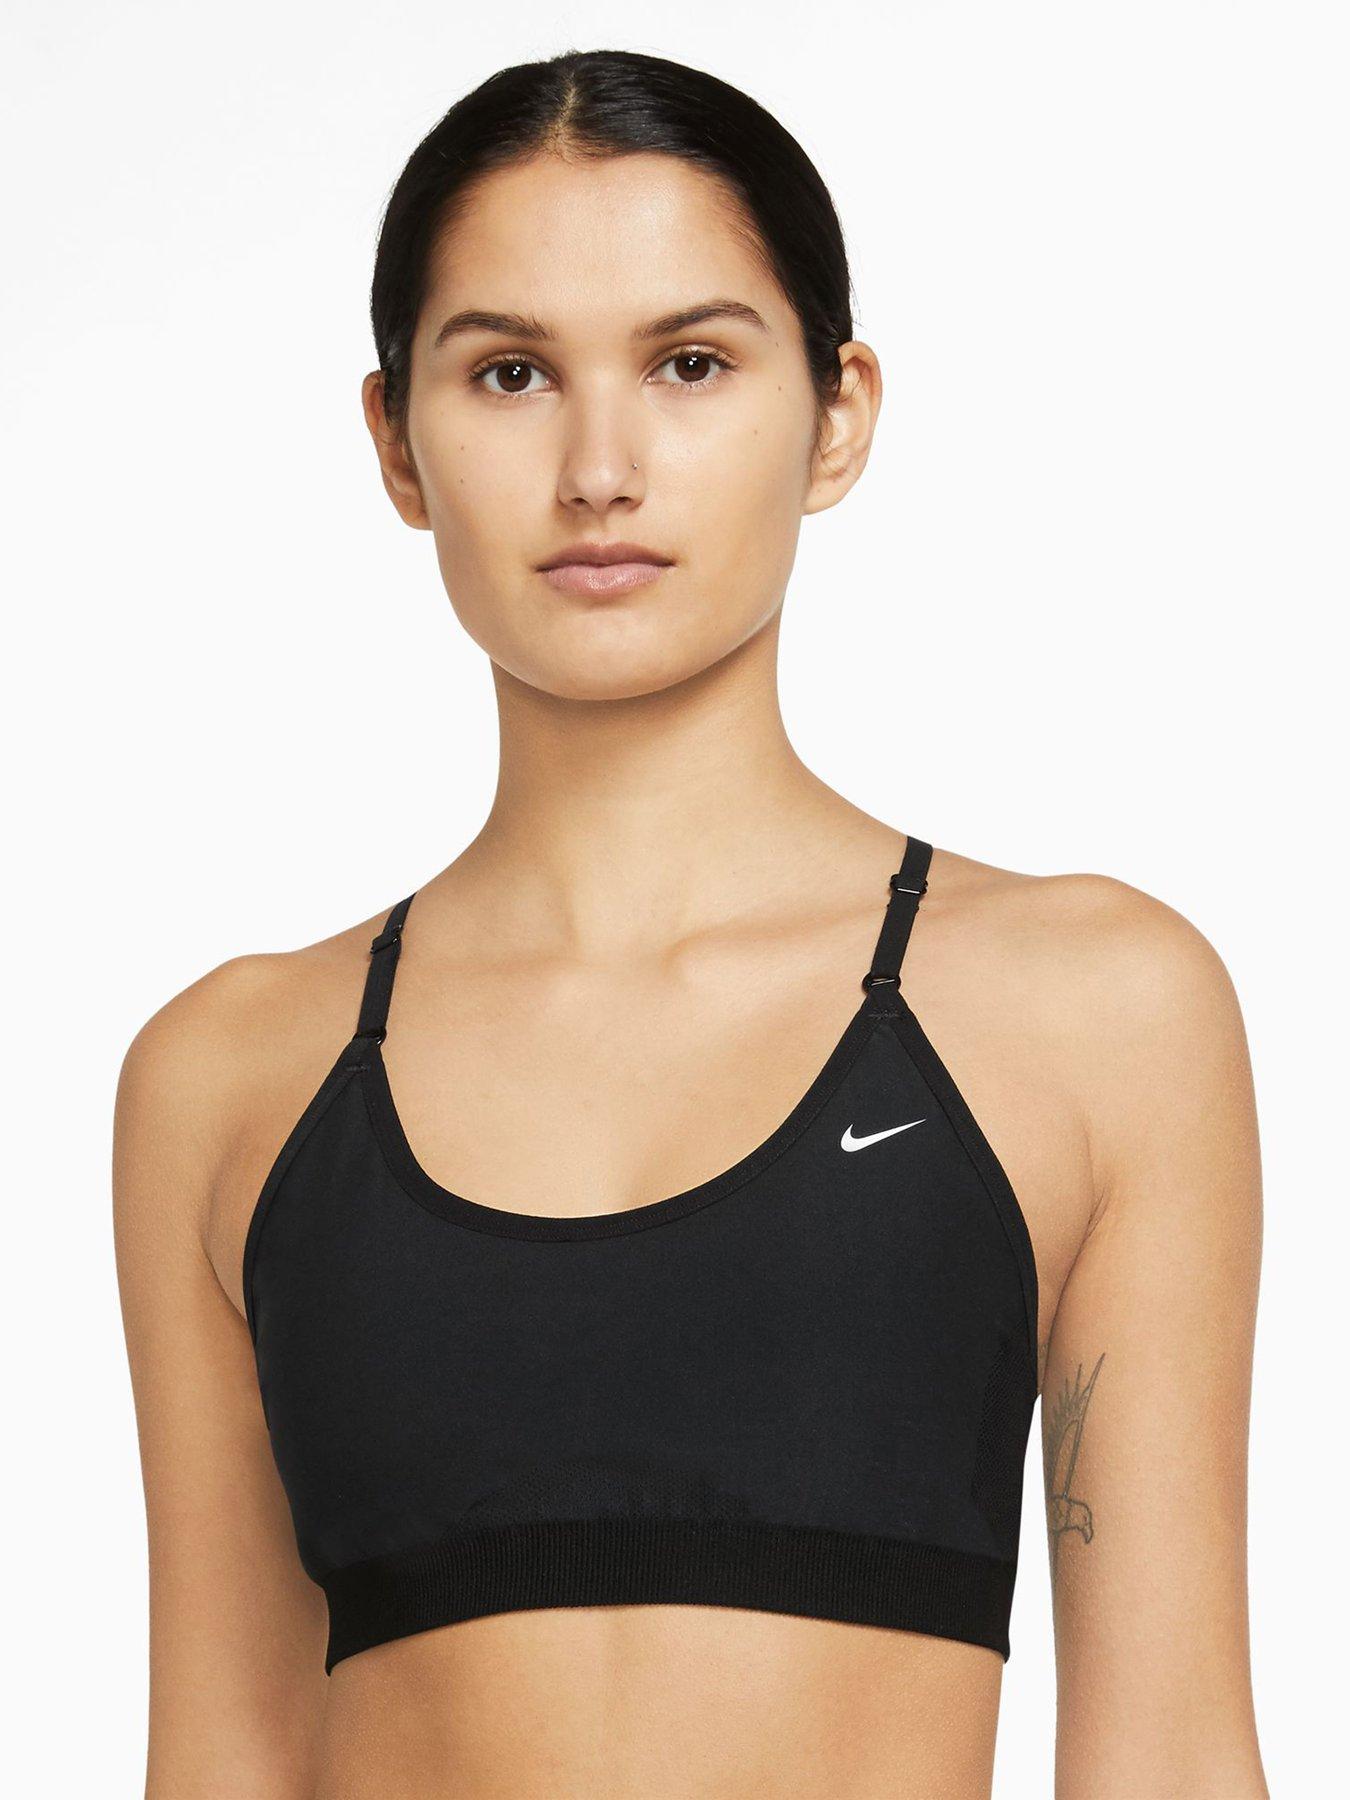 Nike Alpha High Support Dri-Fit Sports Bra Women's XS (A-C) Black AJ0340-010